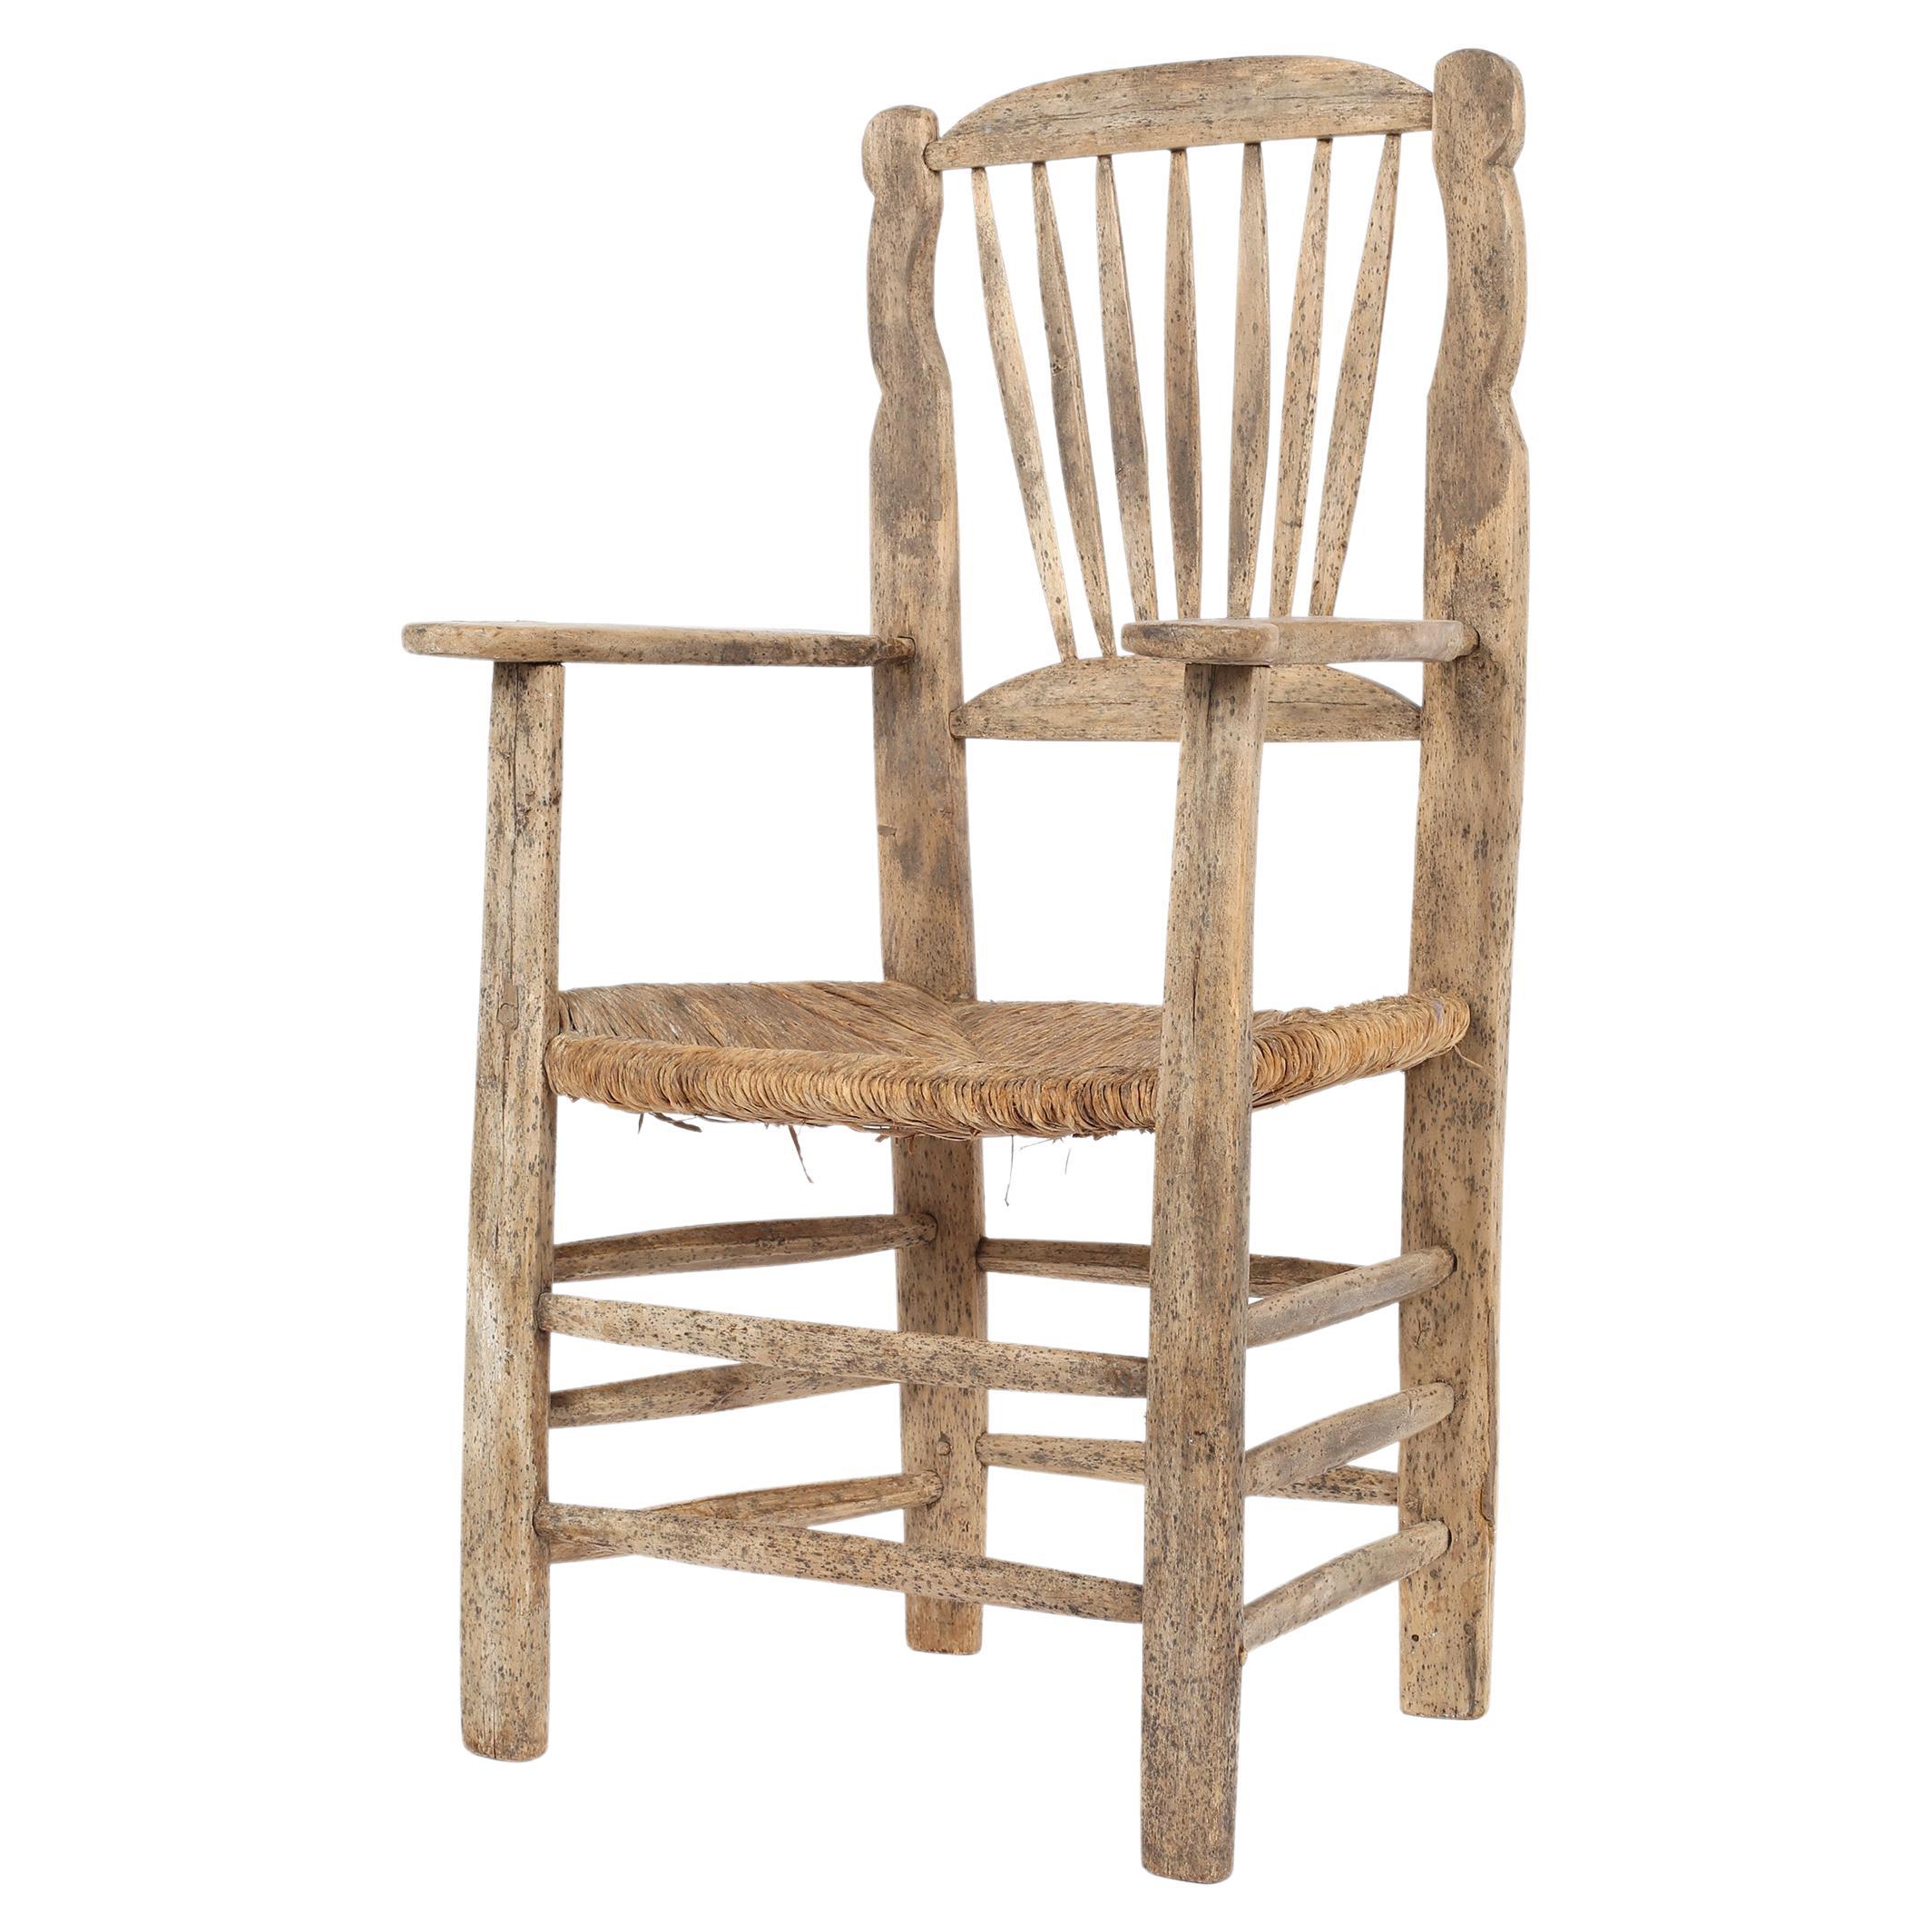 Ein primitiver Stuhl aus Ulme und Binsen aus dem 19. Jahrhundert